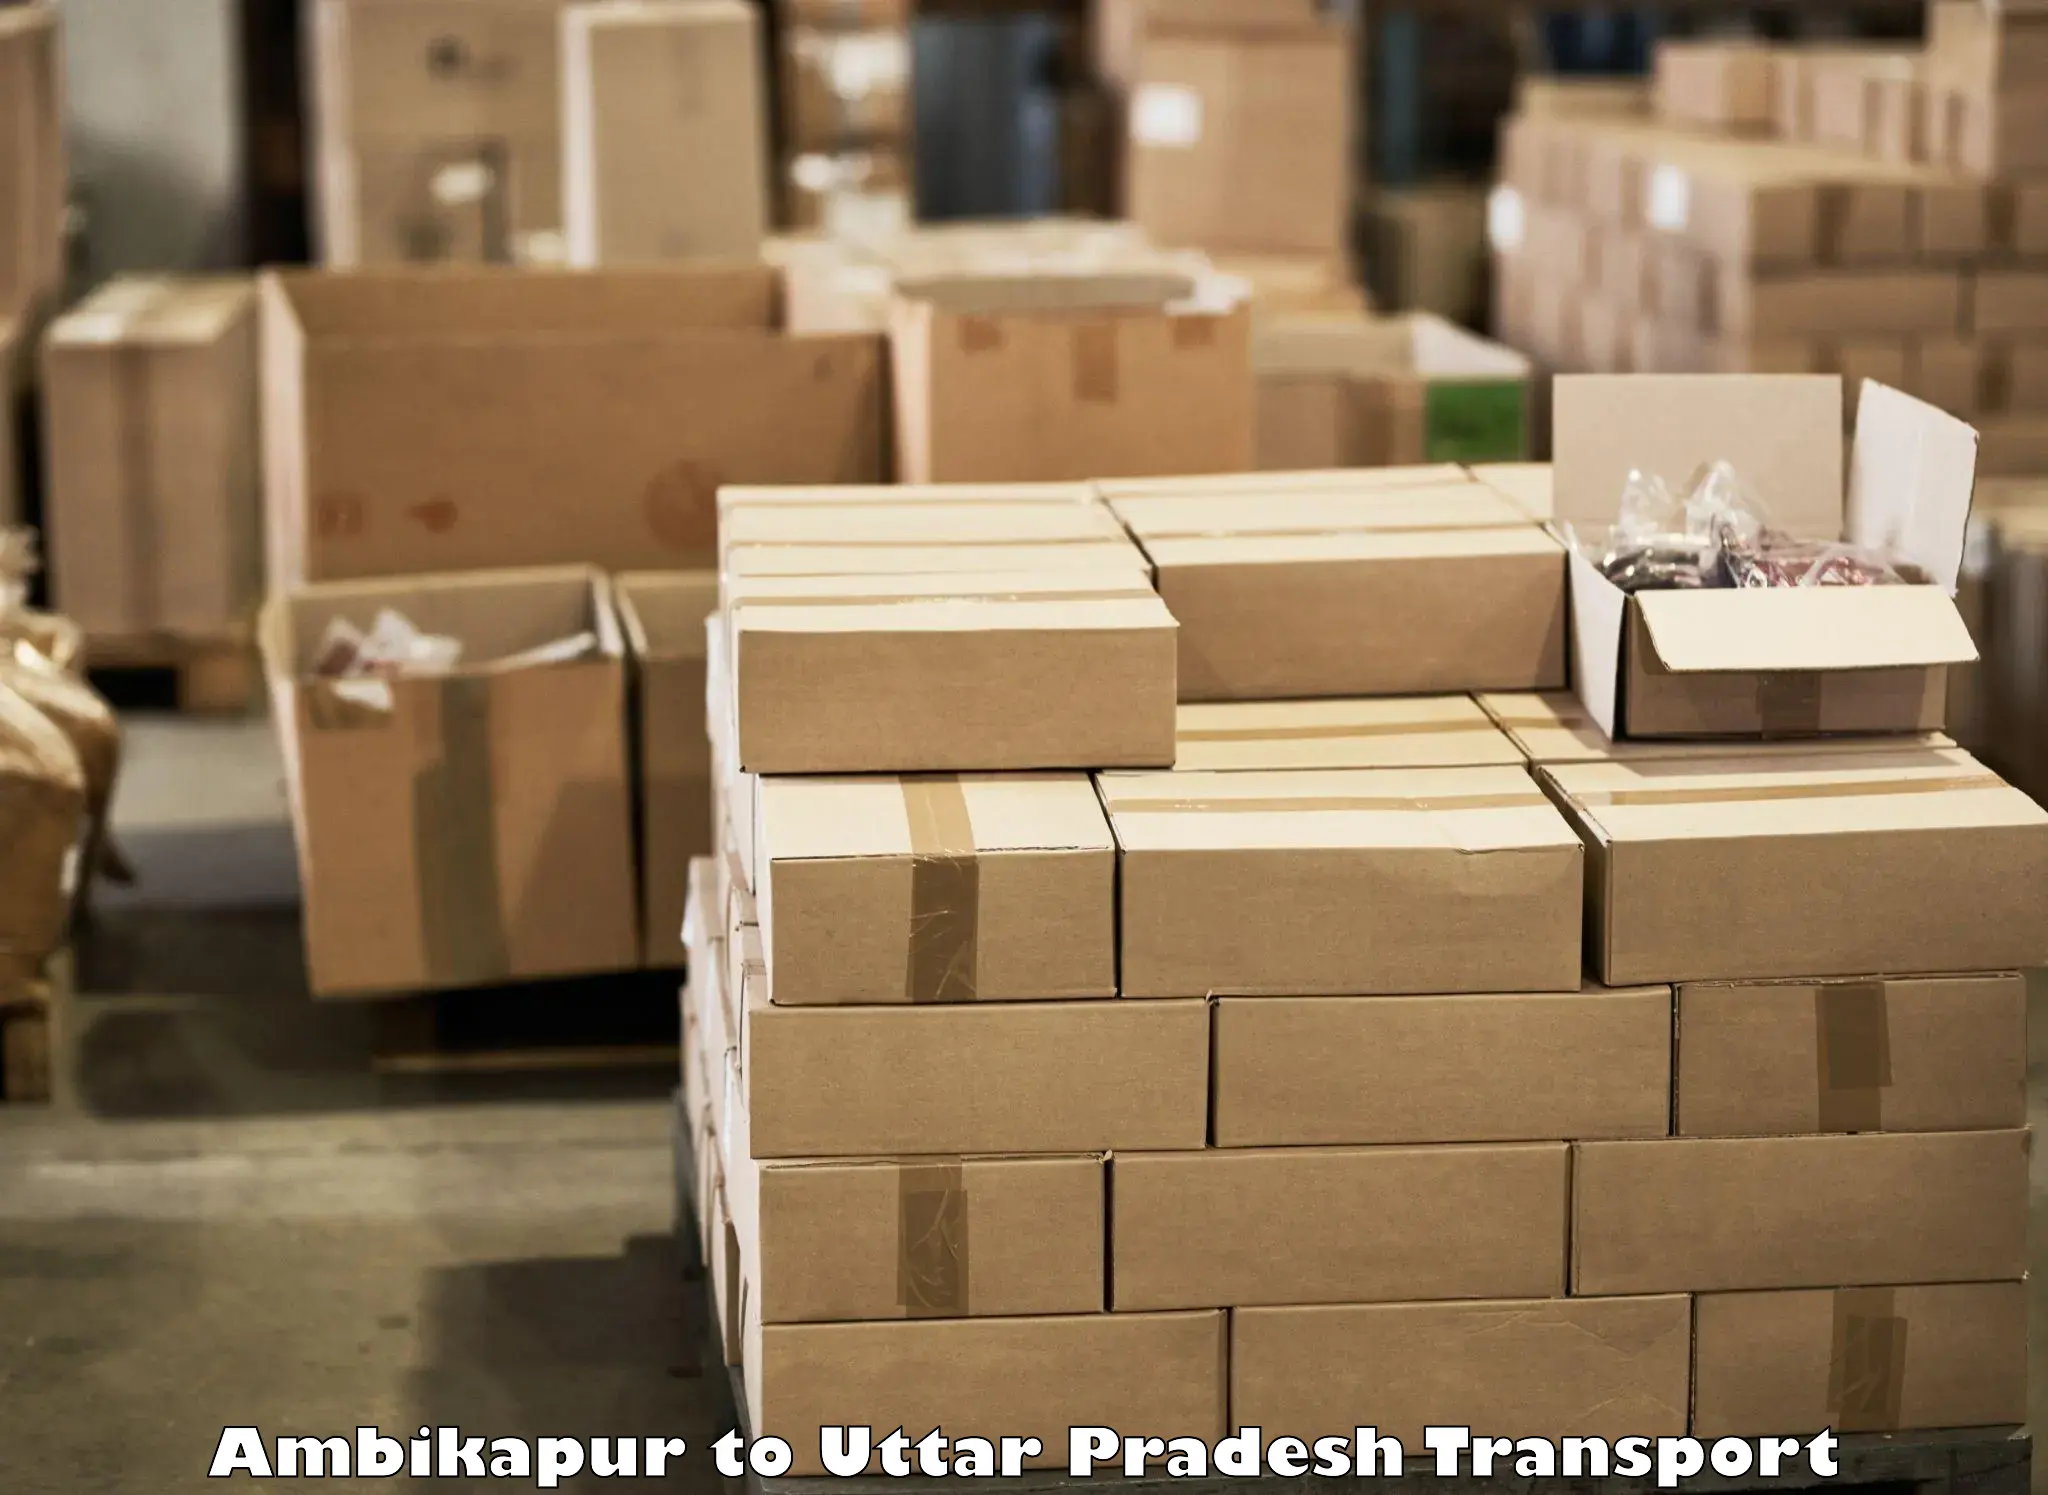 International cargo transportation services Ambikapur to Uttar Pradesh